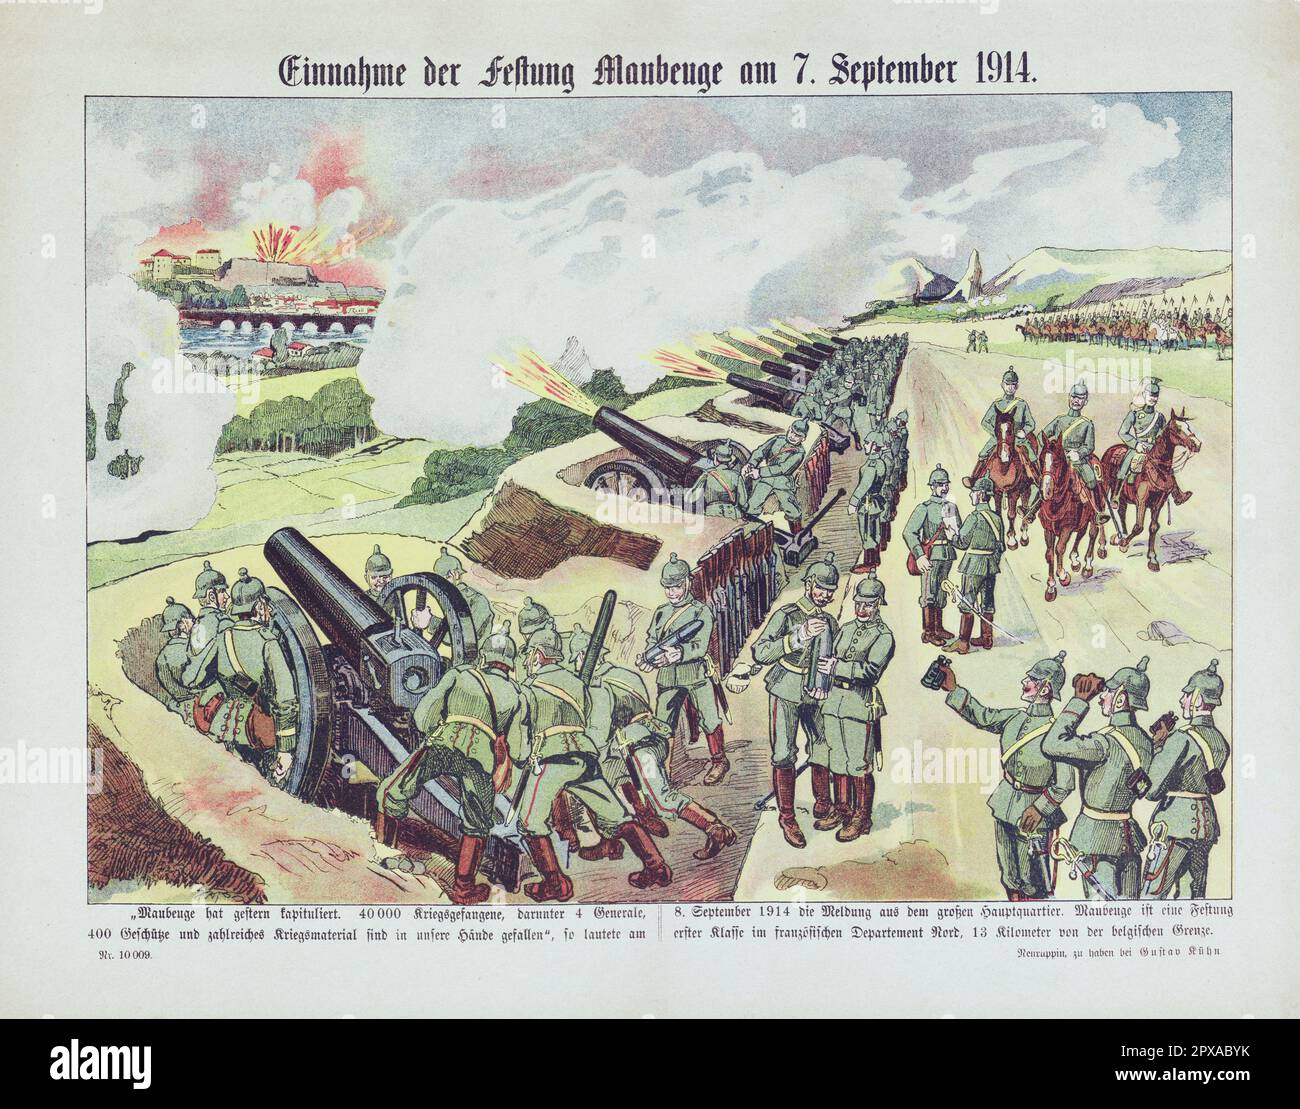 Cartel litográfico de propaganda alemana: Captura de la fortaleza de Maubeuge el 7 de septiembre de 1914. 1914 El sitio de Maubeuge tuvo lugar del 24 de agosto al 7 de septiembre de 1914, en el atrincherado campo de Maubeuge, el inicio de la Primera Guerra Mundial en el frente occidental. Foto de stock